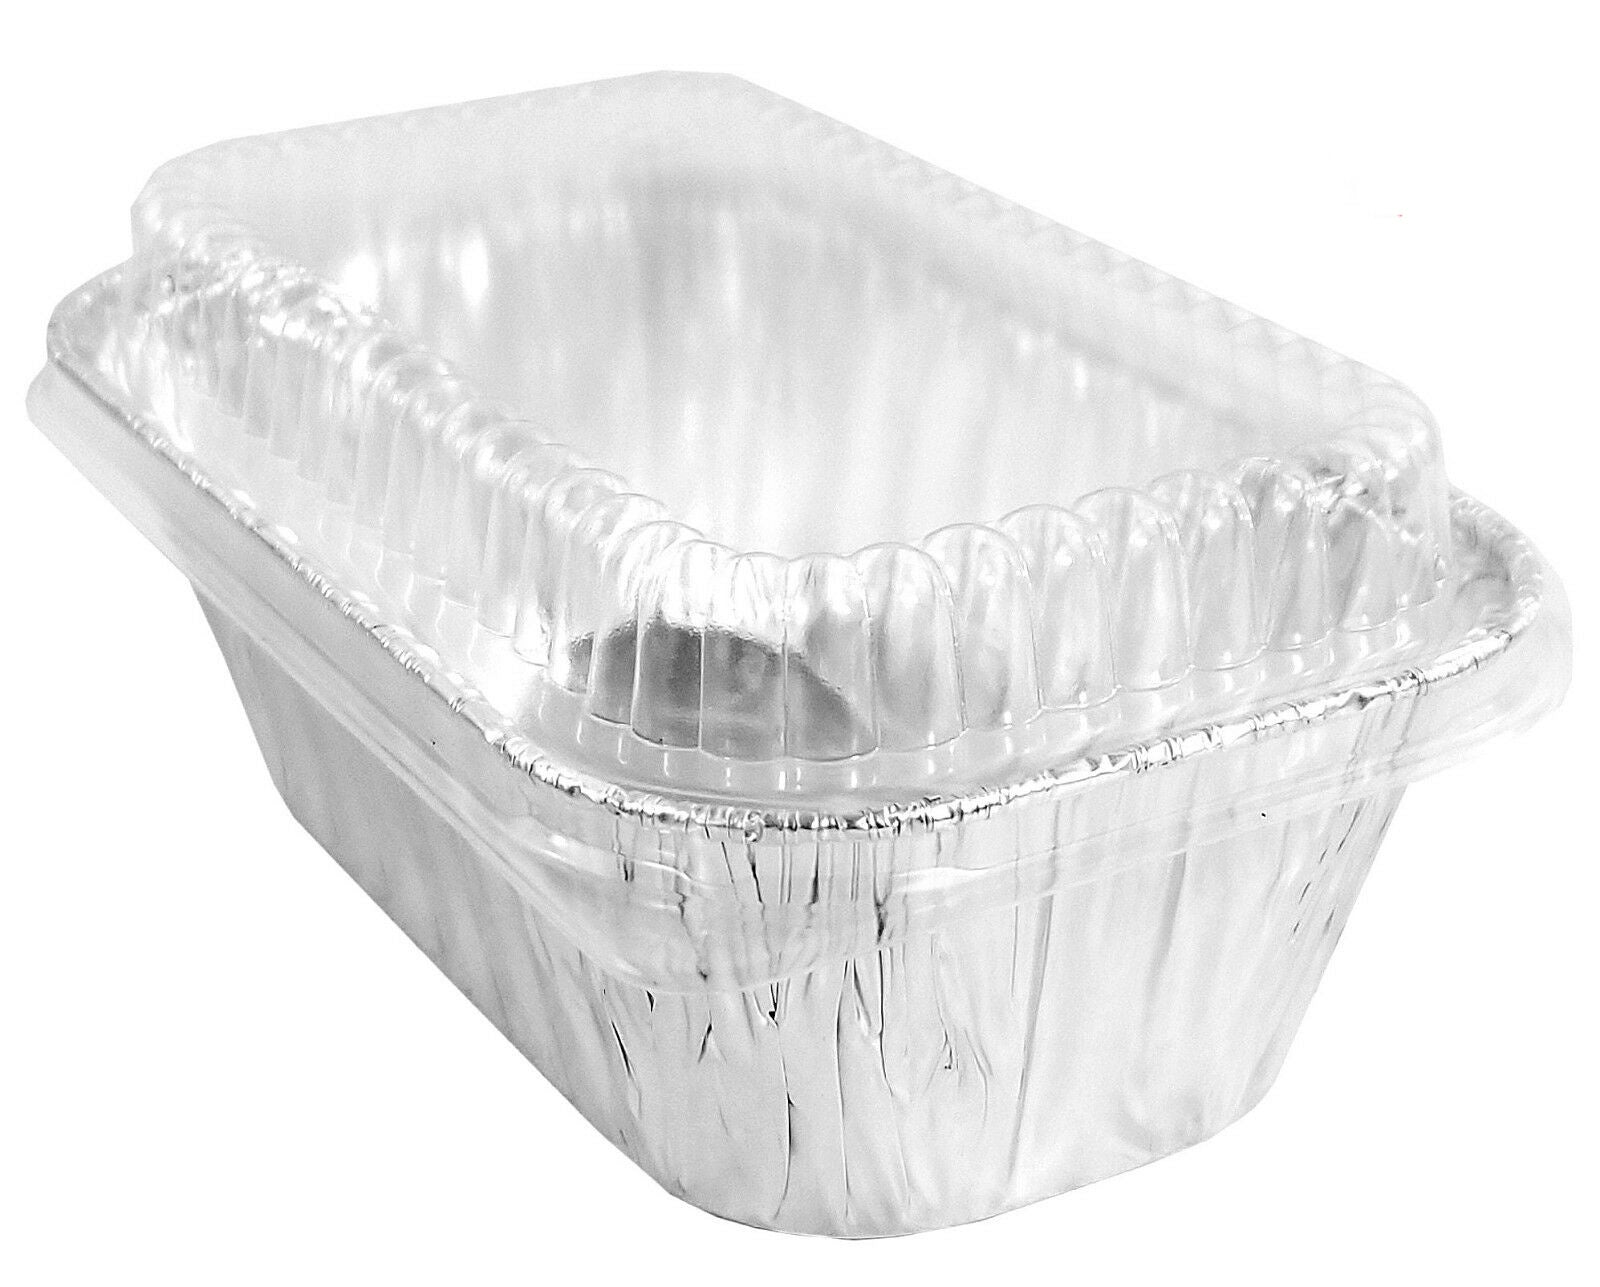 Handi-Foil Square Disposable Aluminum Foil Cake Pan w/Clear Dome Lid 50/PK